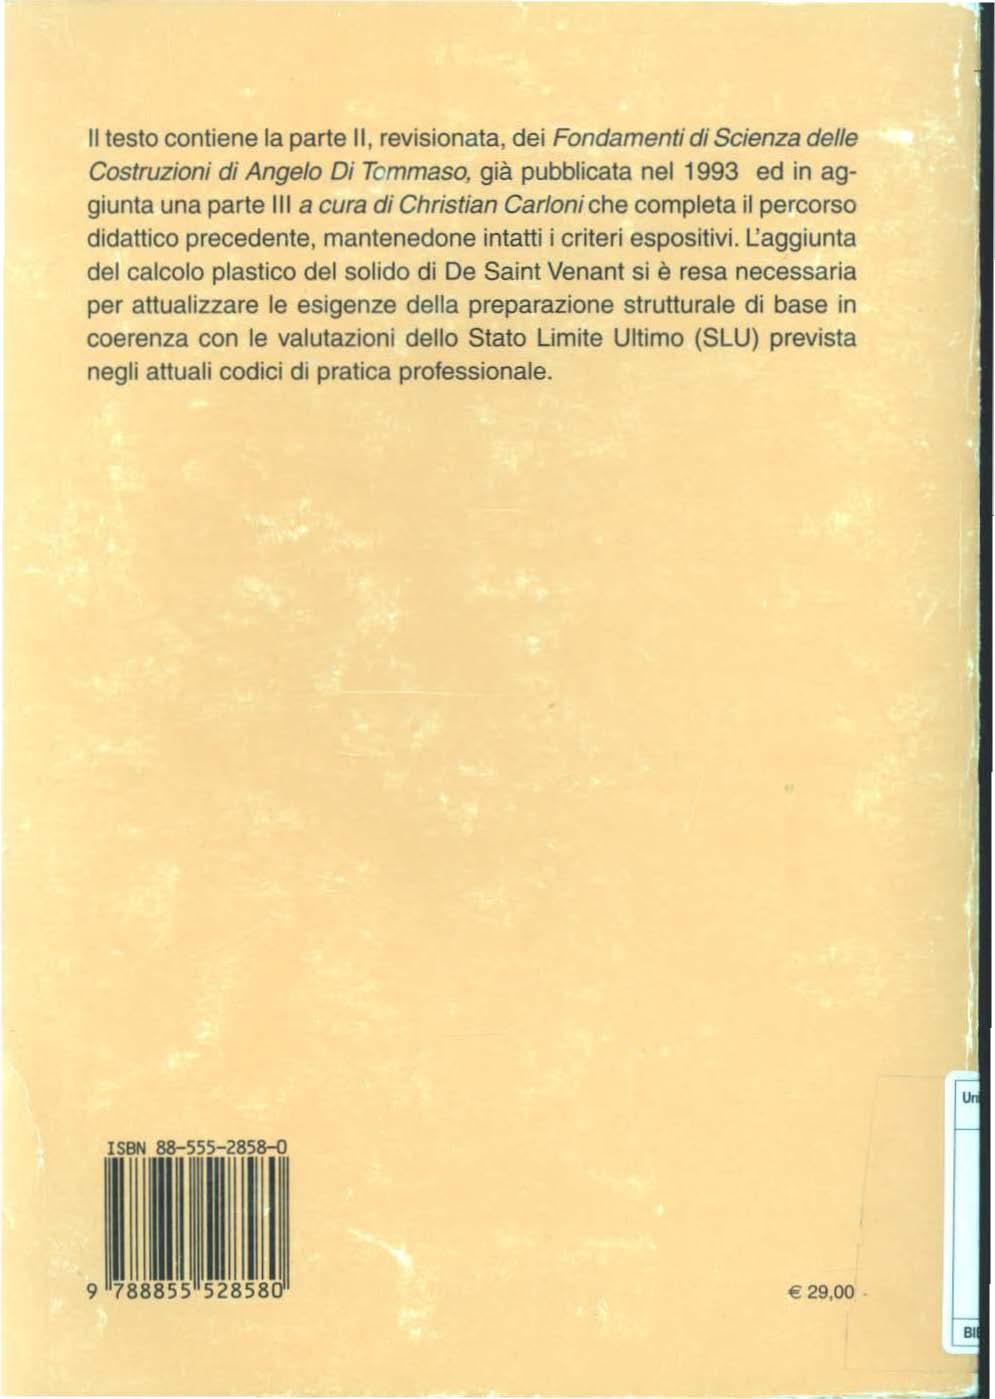 Il testo contiene la parte 11, revisionata, dei Fondamenti di Scienza delle Costruzioni dt Angelo Di Tcmmaso, già pubblicata nel 1993 ed in aggiunta una parte lii a cura di Christian Carloni che